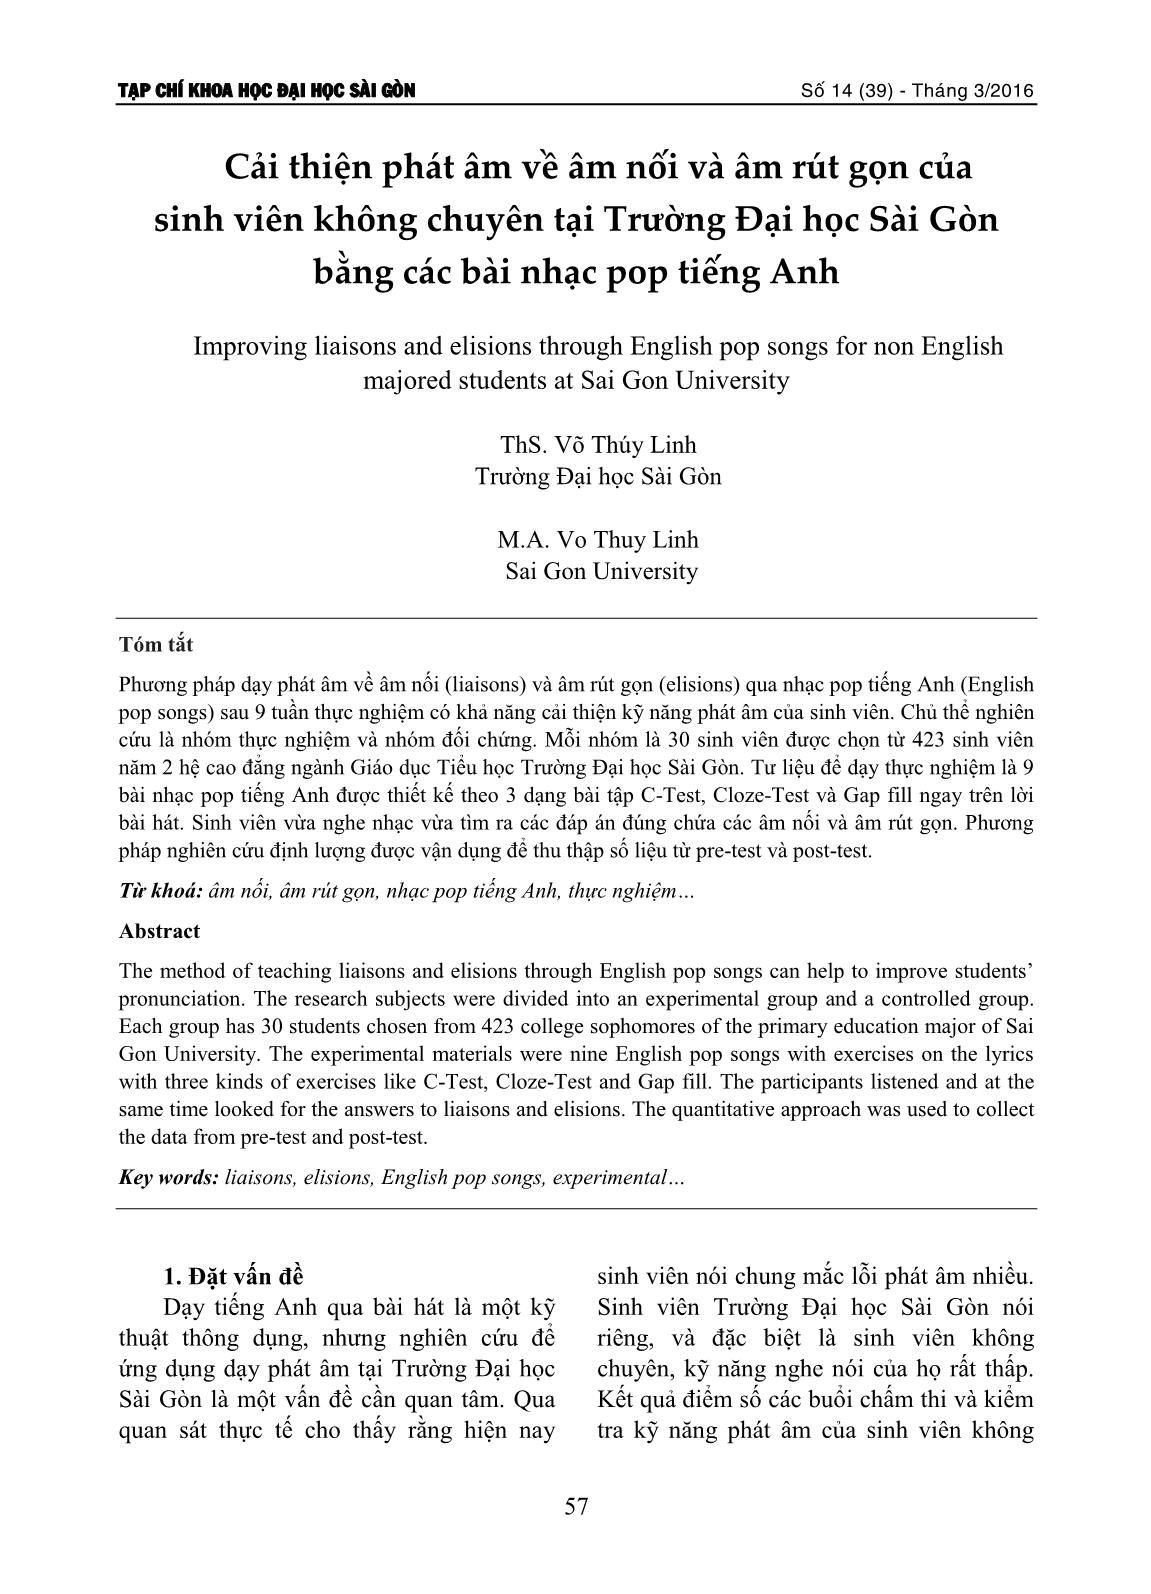 Cải thiện phát âm về âm nối và âm rút gọn của sinh viên không chuyên tại Trường Đại học Sài Gòn bằng các bài nhạc pop tiếng Anh trang 1